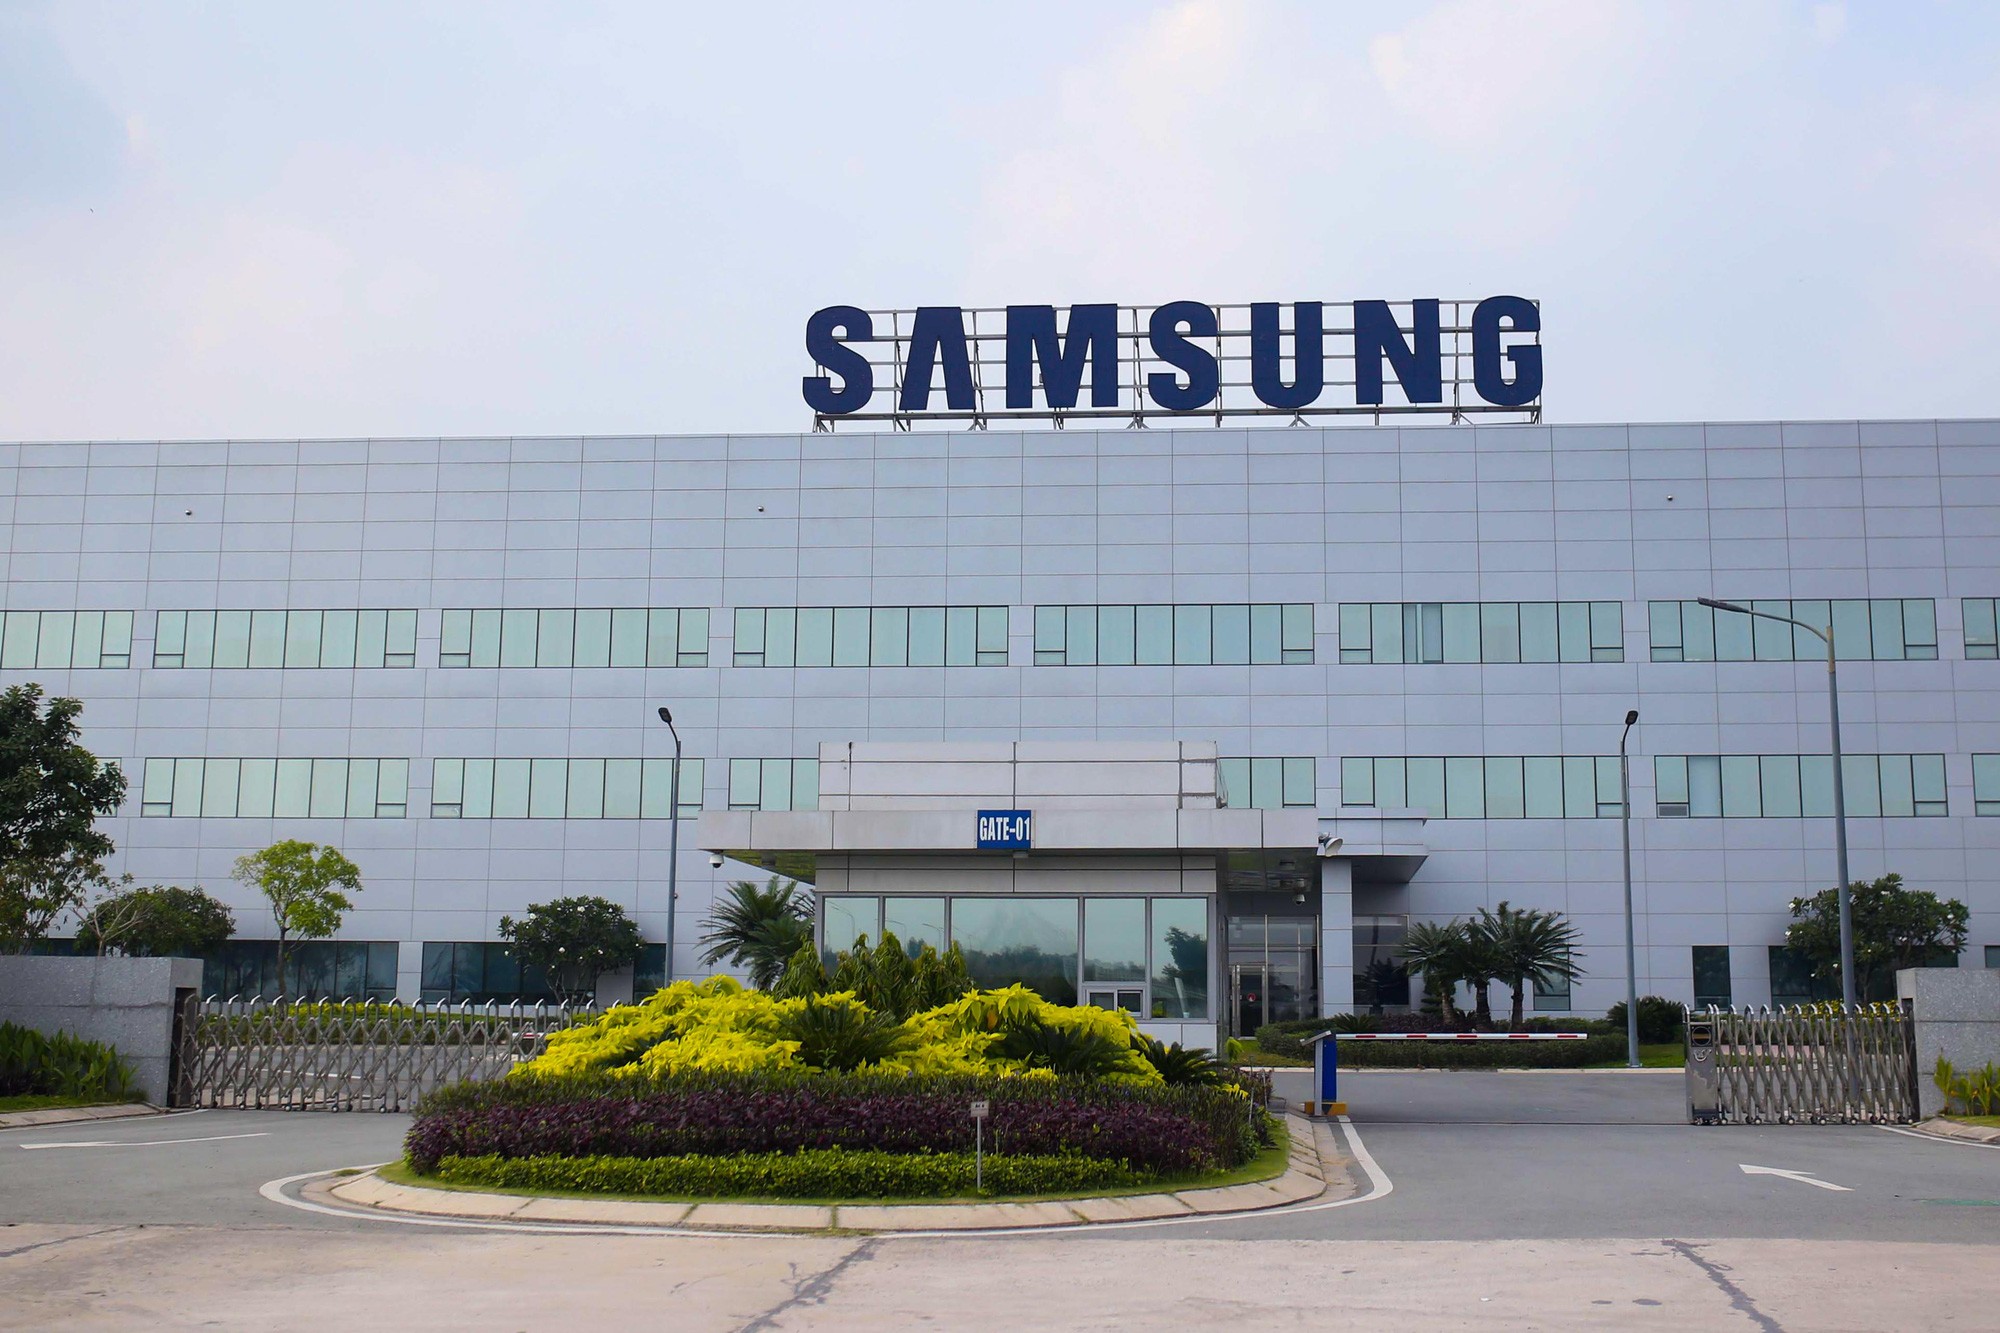 
Điều kiện kinh tế không mấy thuận lợi, tình trạng lạm phát, lãi suất tăng cao cùng với cuộc xung đột chính trị giữa Nga và Ukraine, ban lãnh đạo của Samsung đã phải điều chỉnh kế hoạch sản xuất năm 2022 từ 334 triệu sản phẩm xuống chỉ còn 270 triệu sản phẩm. Ảnh minh họa
